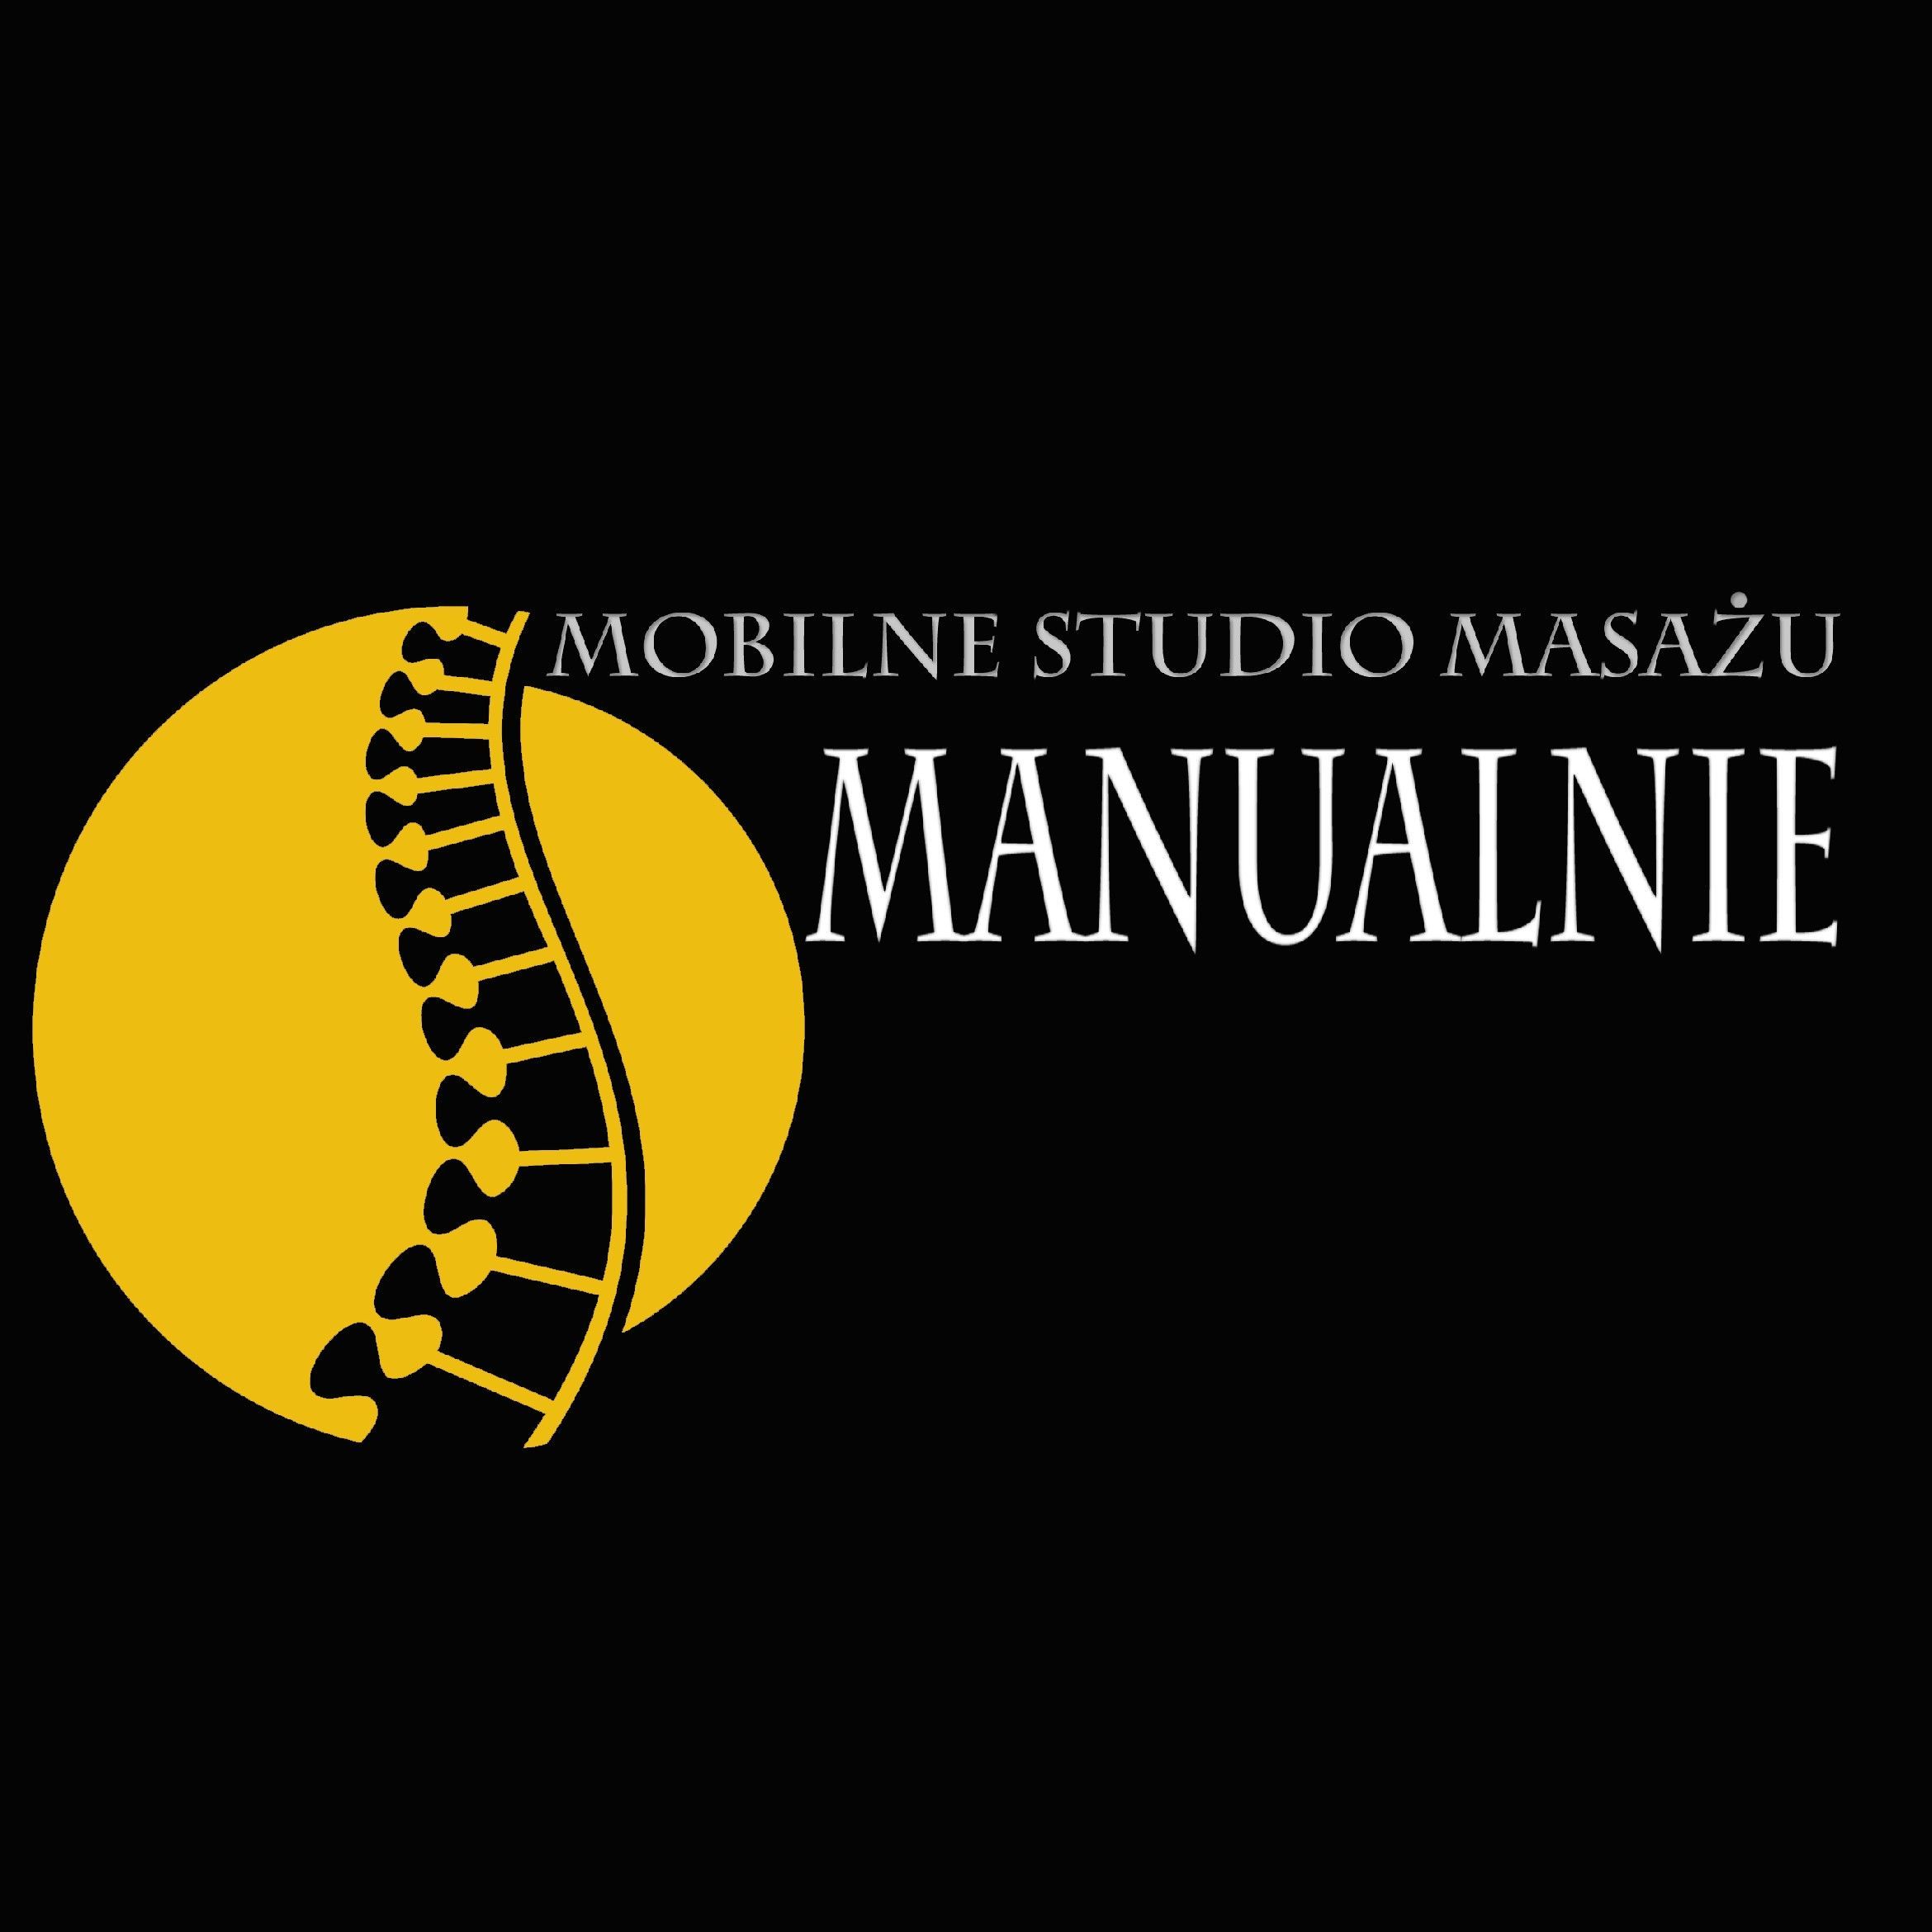 Mobilne Studio Masażu "Manualnie", 40-304, Katowice